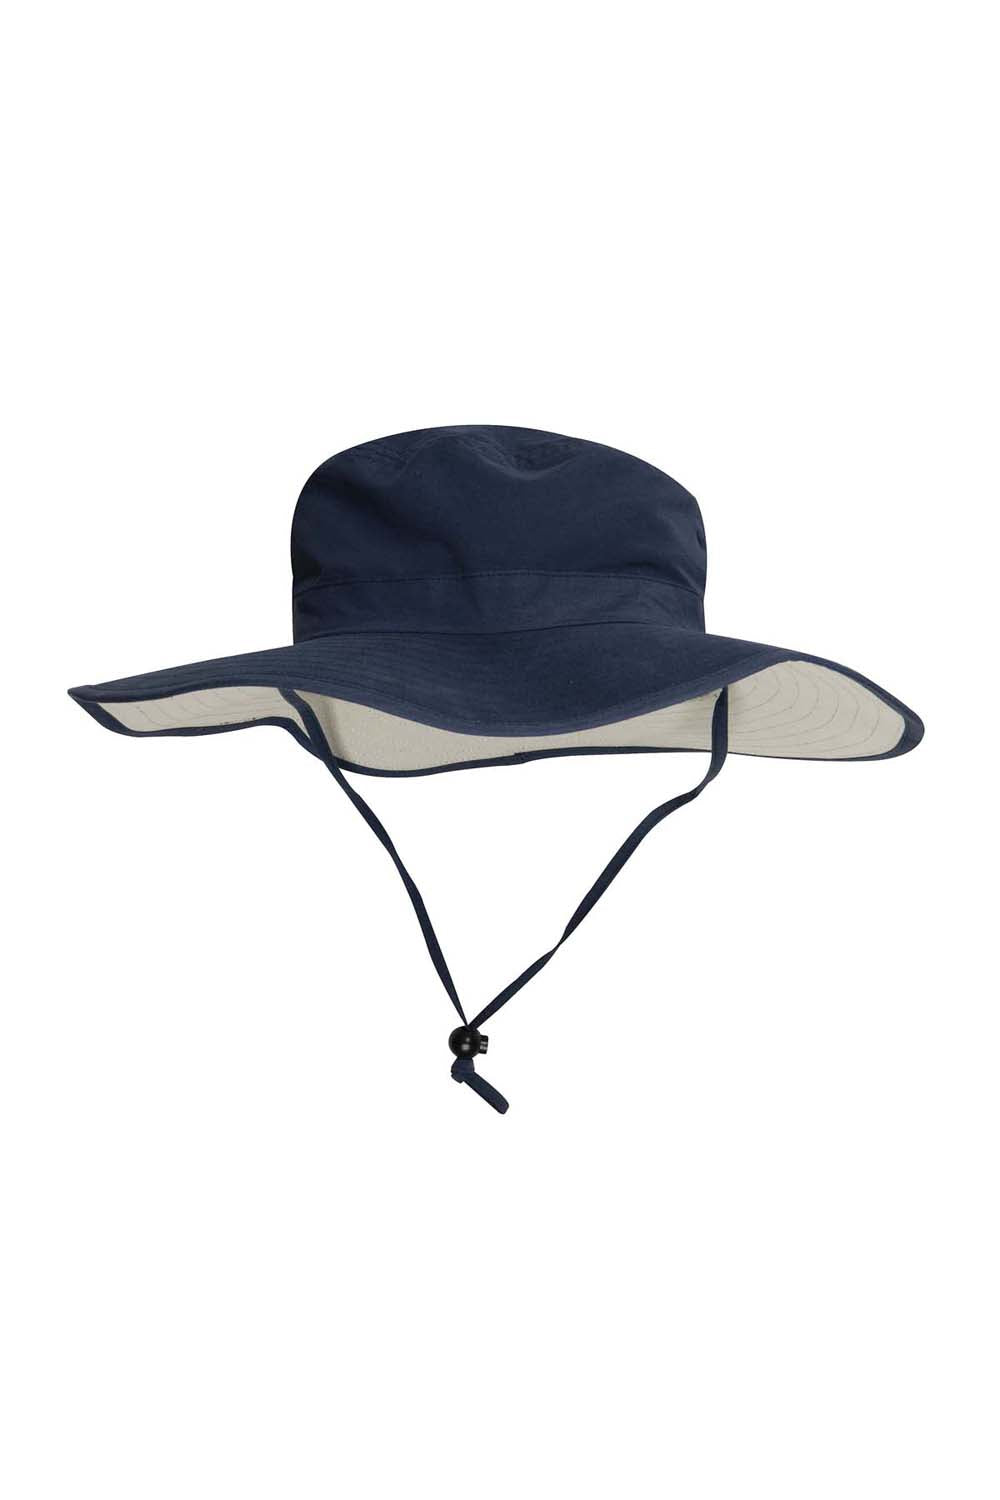 17.66Adam-Sombrero de pescador Extreme Adventurer UPF 50 + para hombre  sombrero de pescador piedra